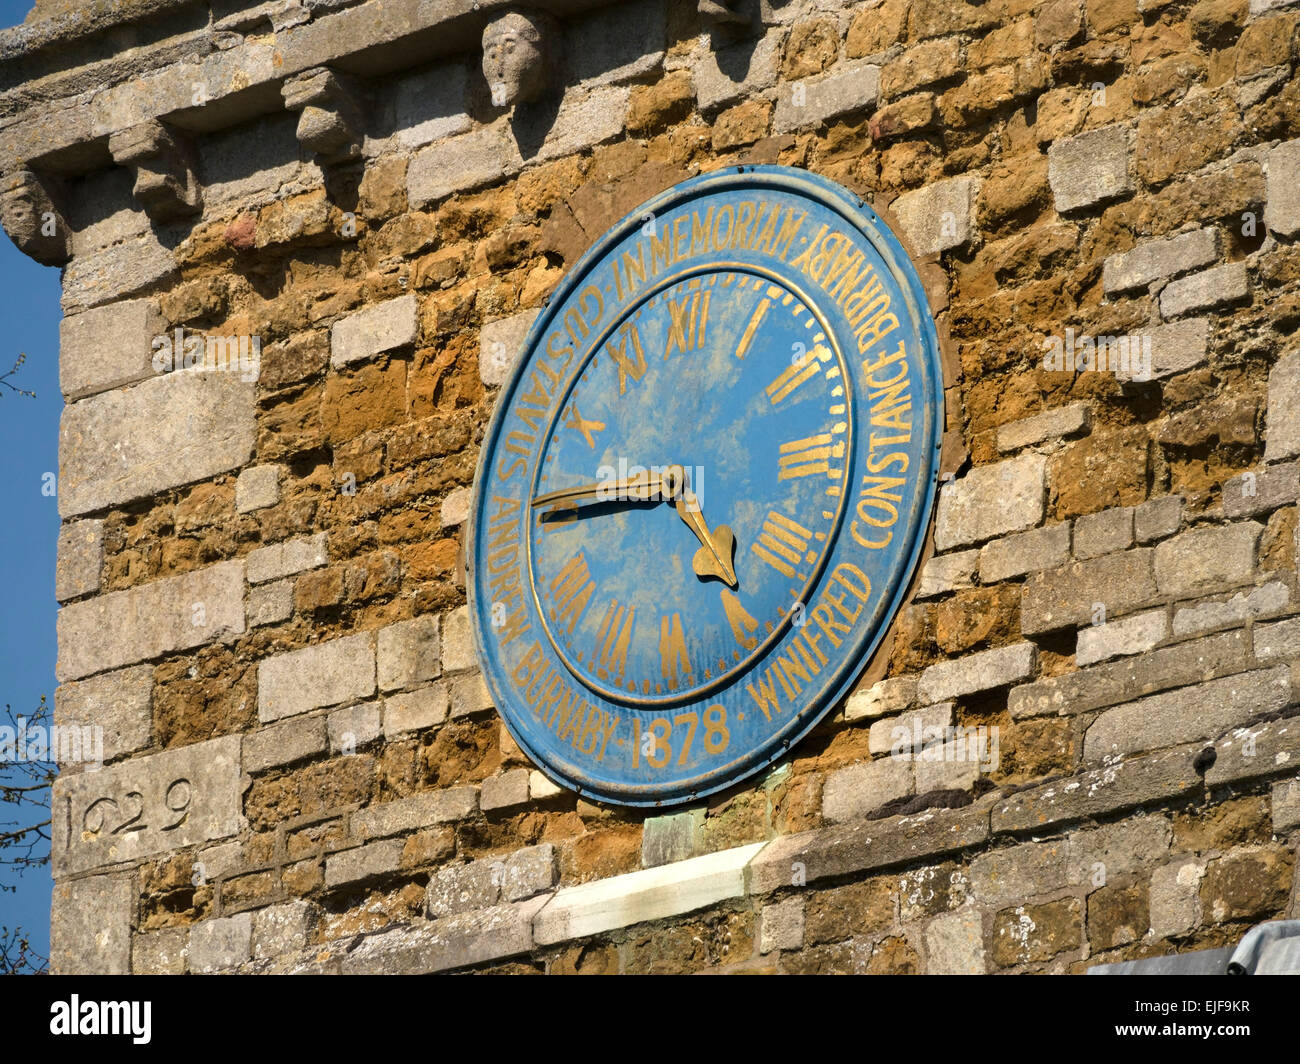 Vieille horloge d'église avec visage bleu et aiguilles en or et chiffres romains, Burrough on the Hill Church, Leicestershire, Angleterre, Royaume-Uni. Banque D'Images